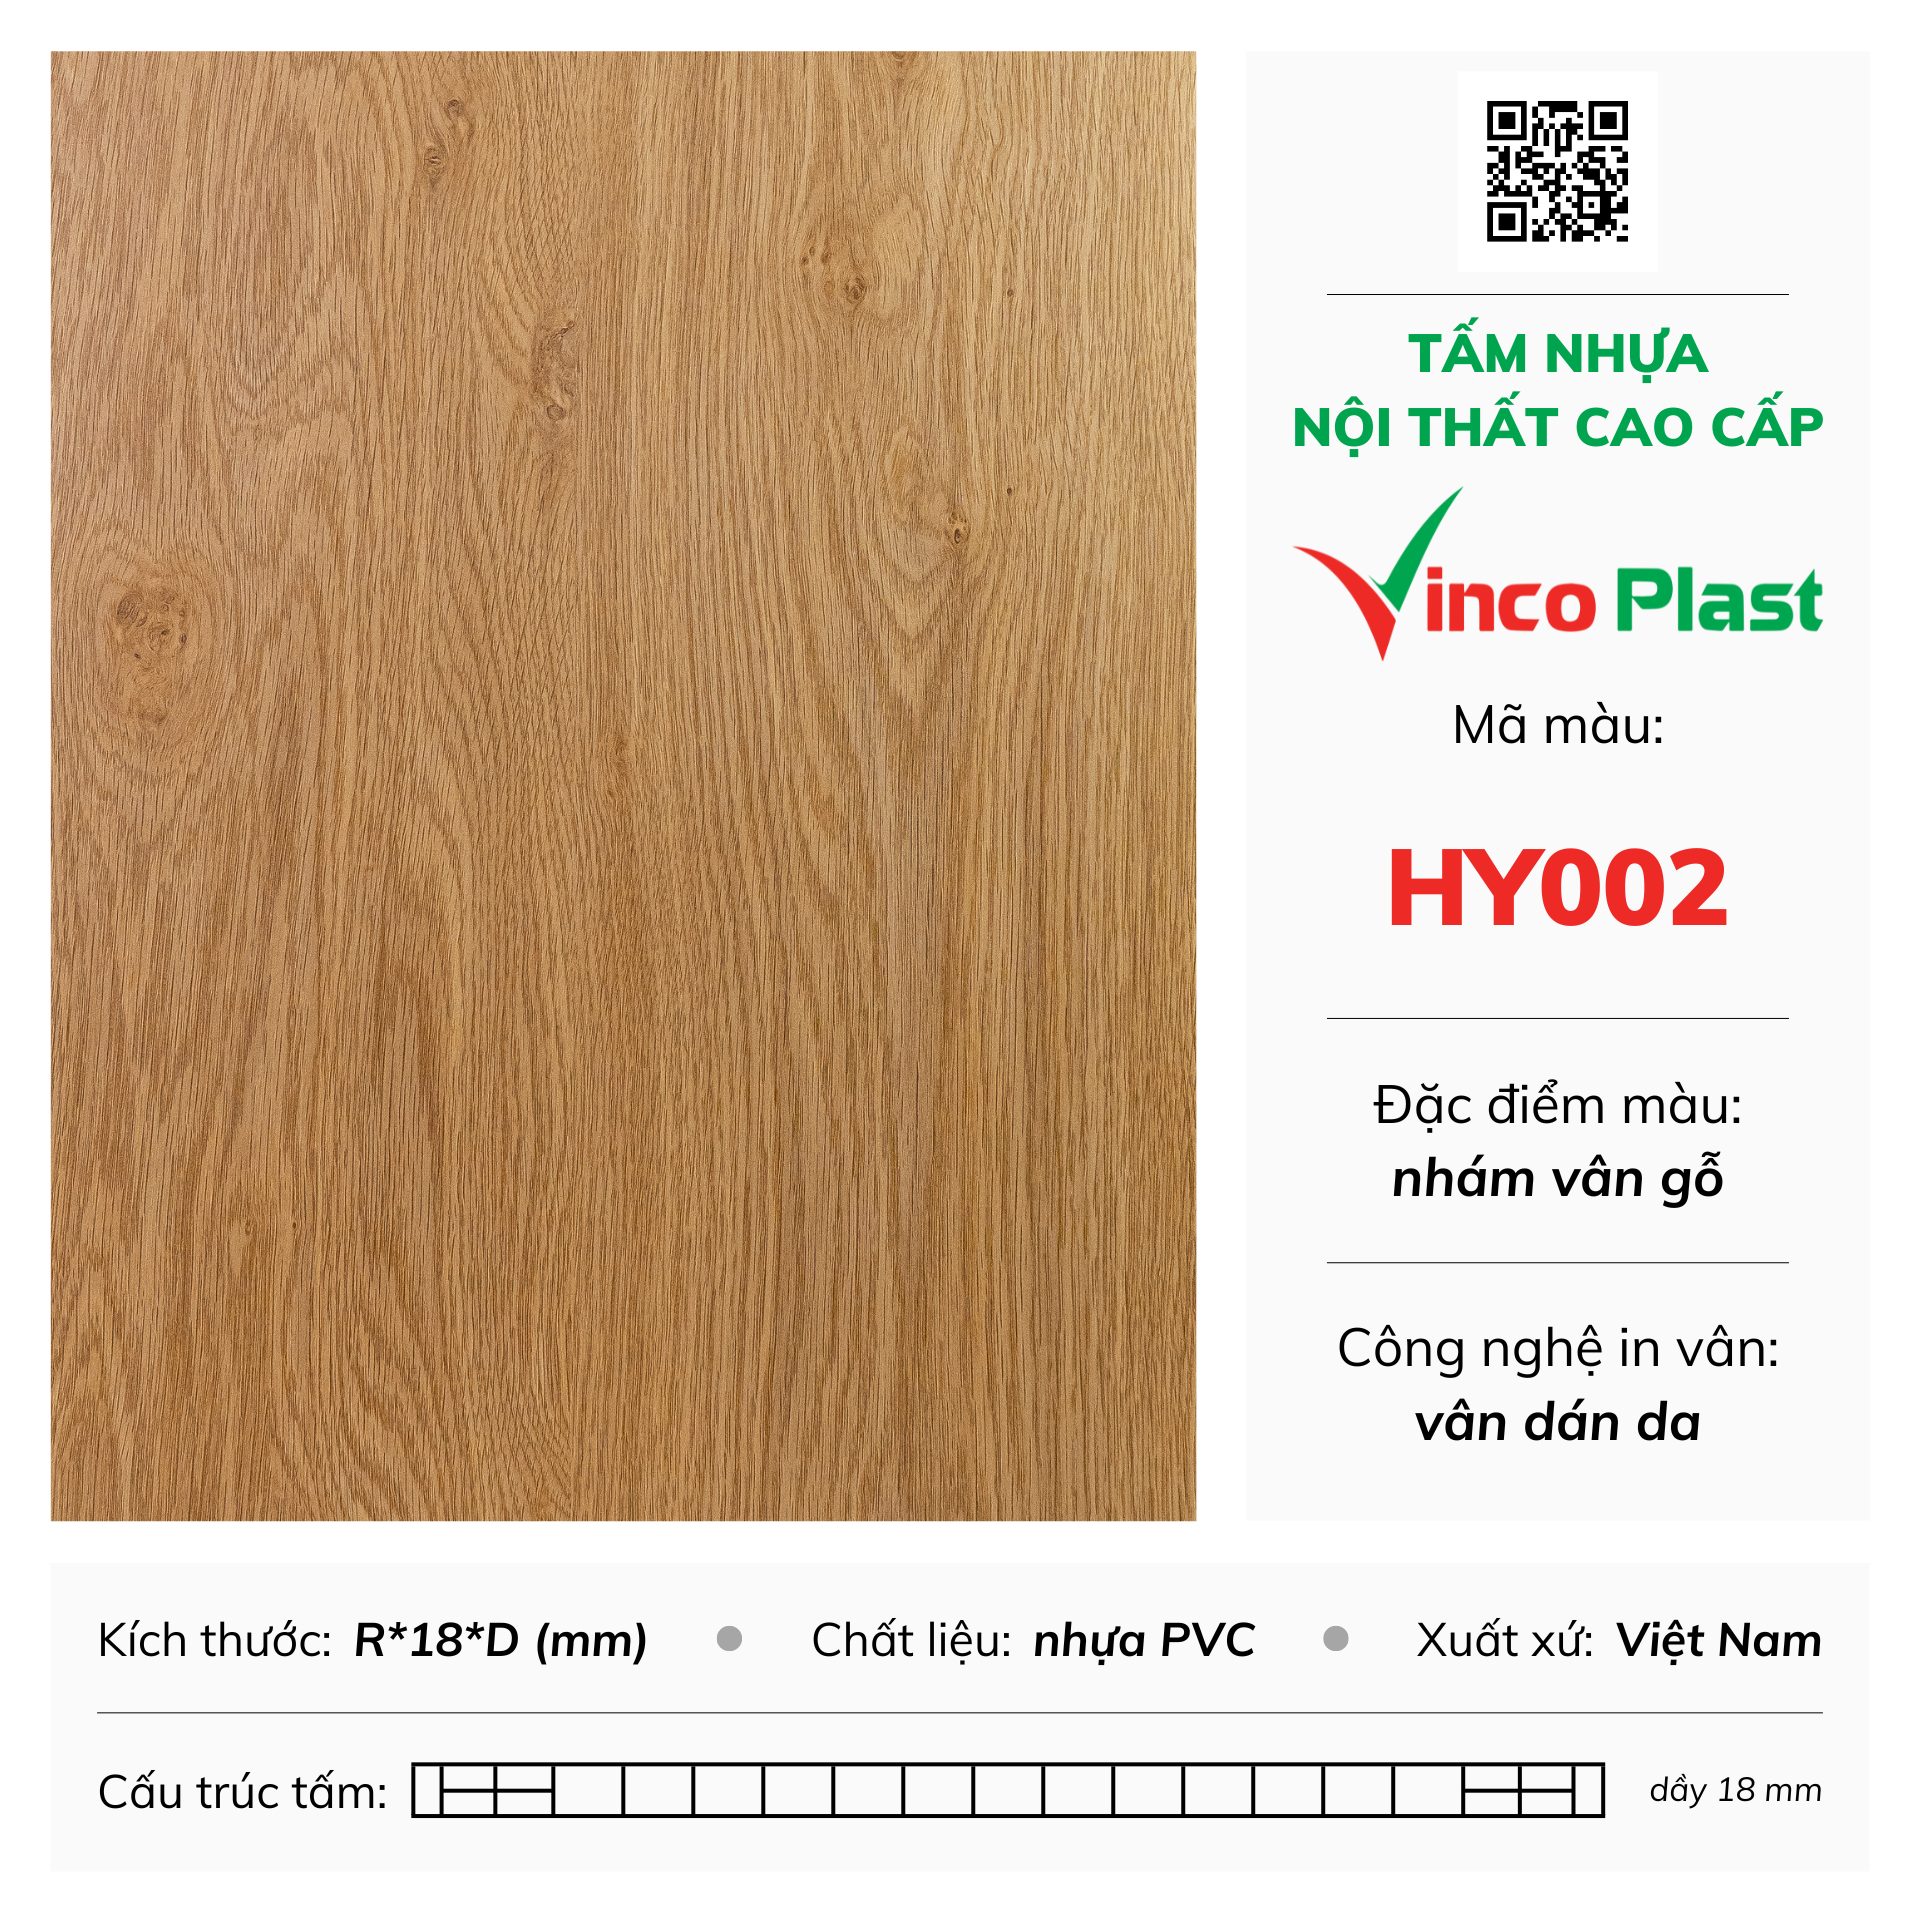 Tấm nhựa nội thất cao cấp Vincoplast màu HY002 (2)